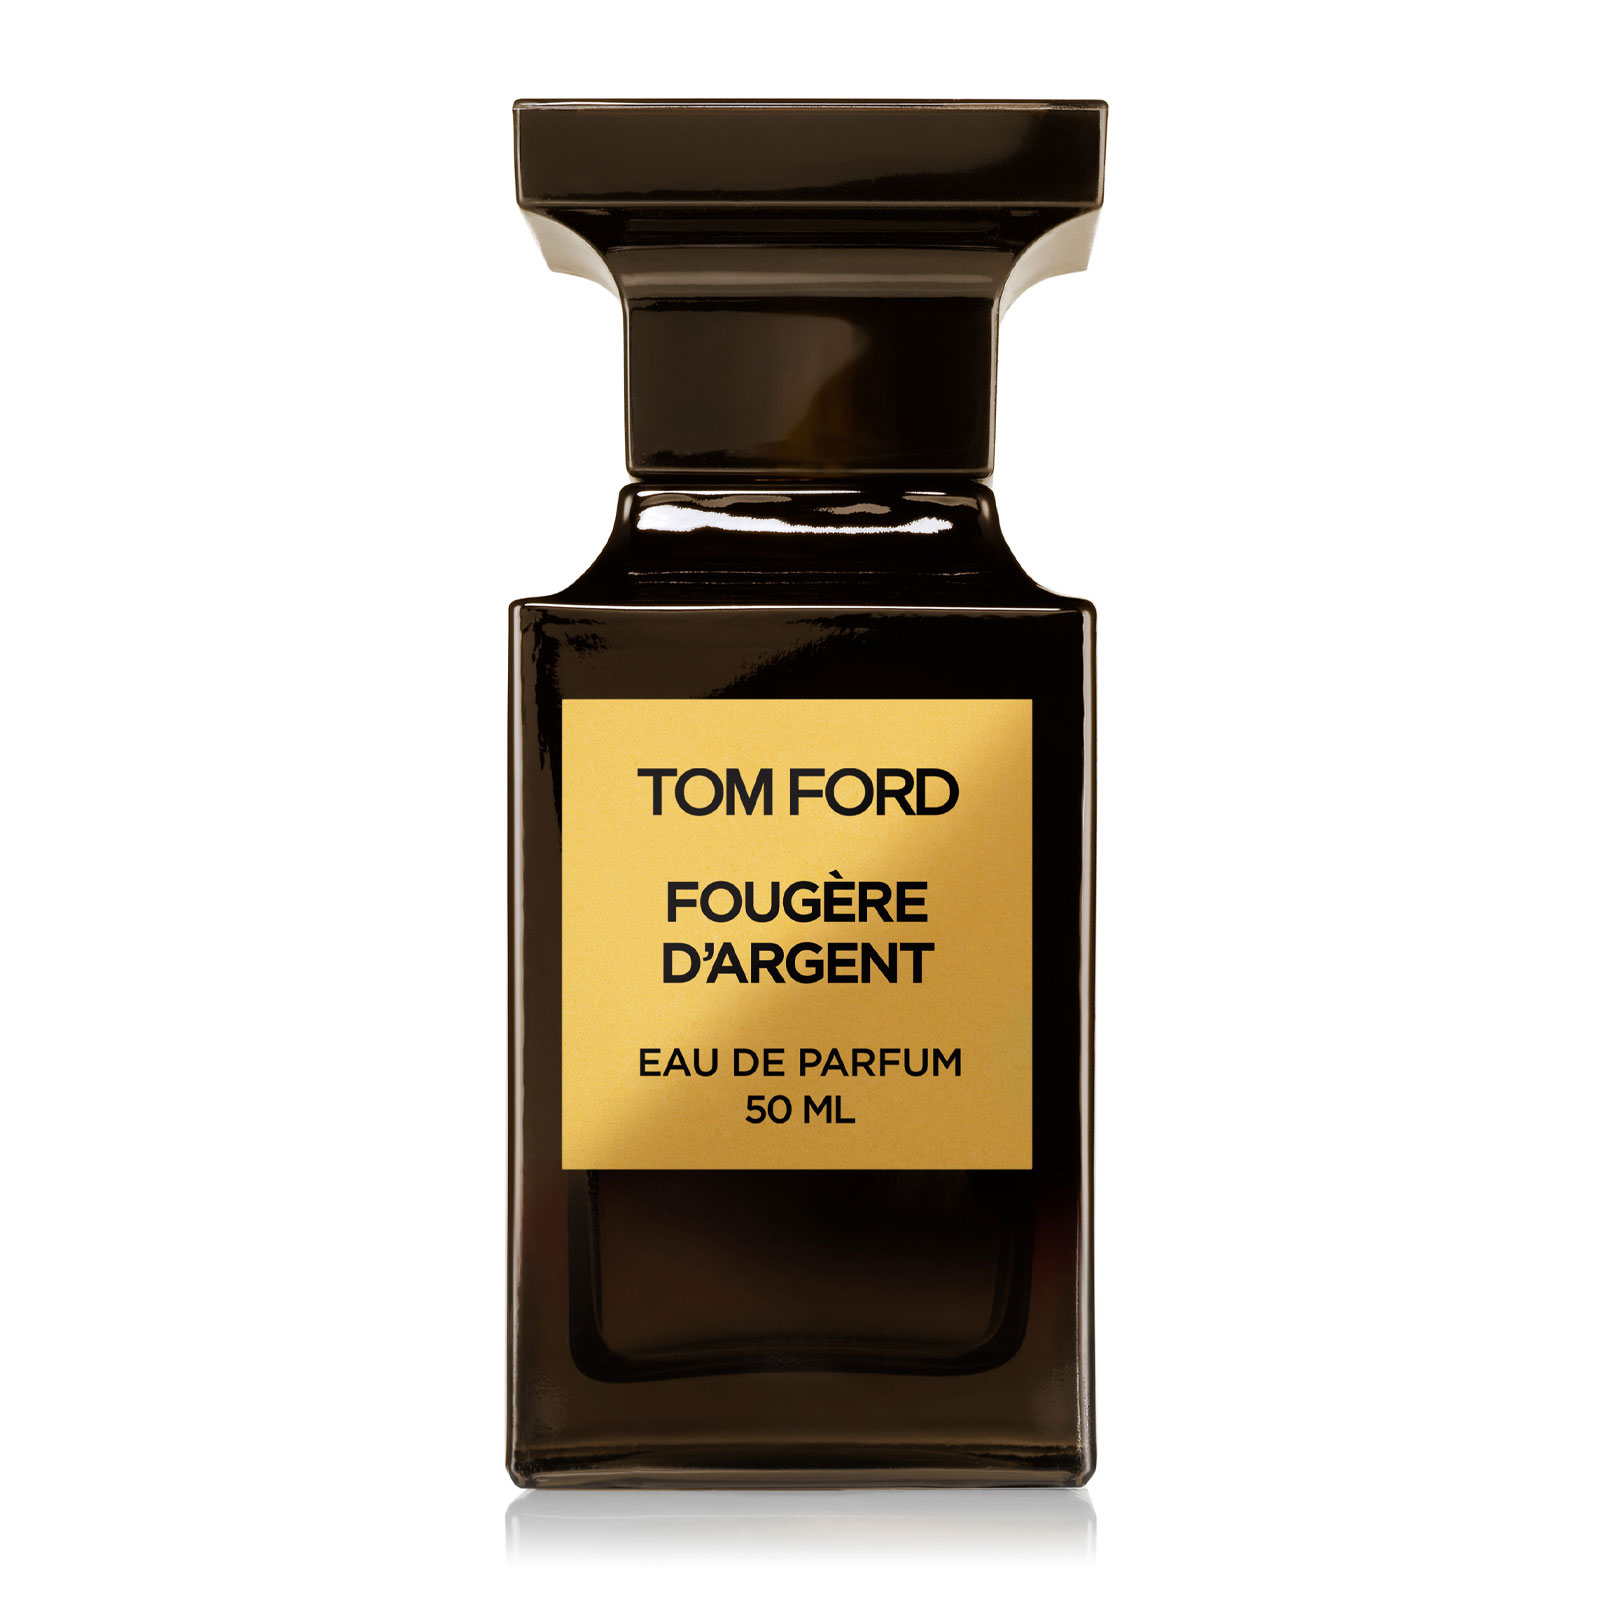 Tom Ford Fougere D'Argent Eau De Parfum 50Ml